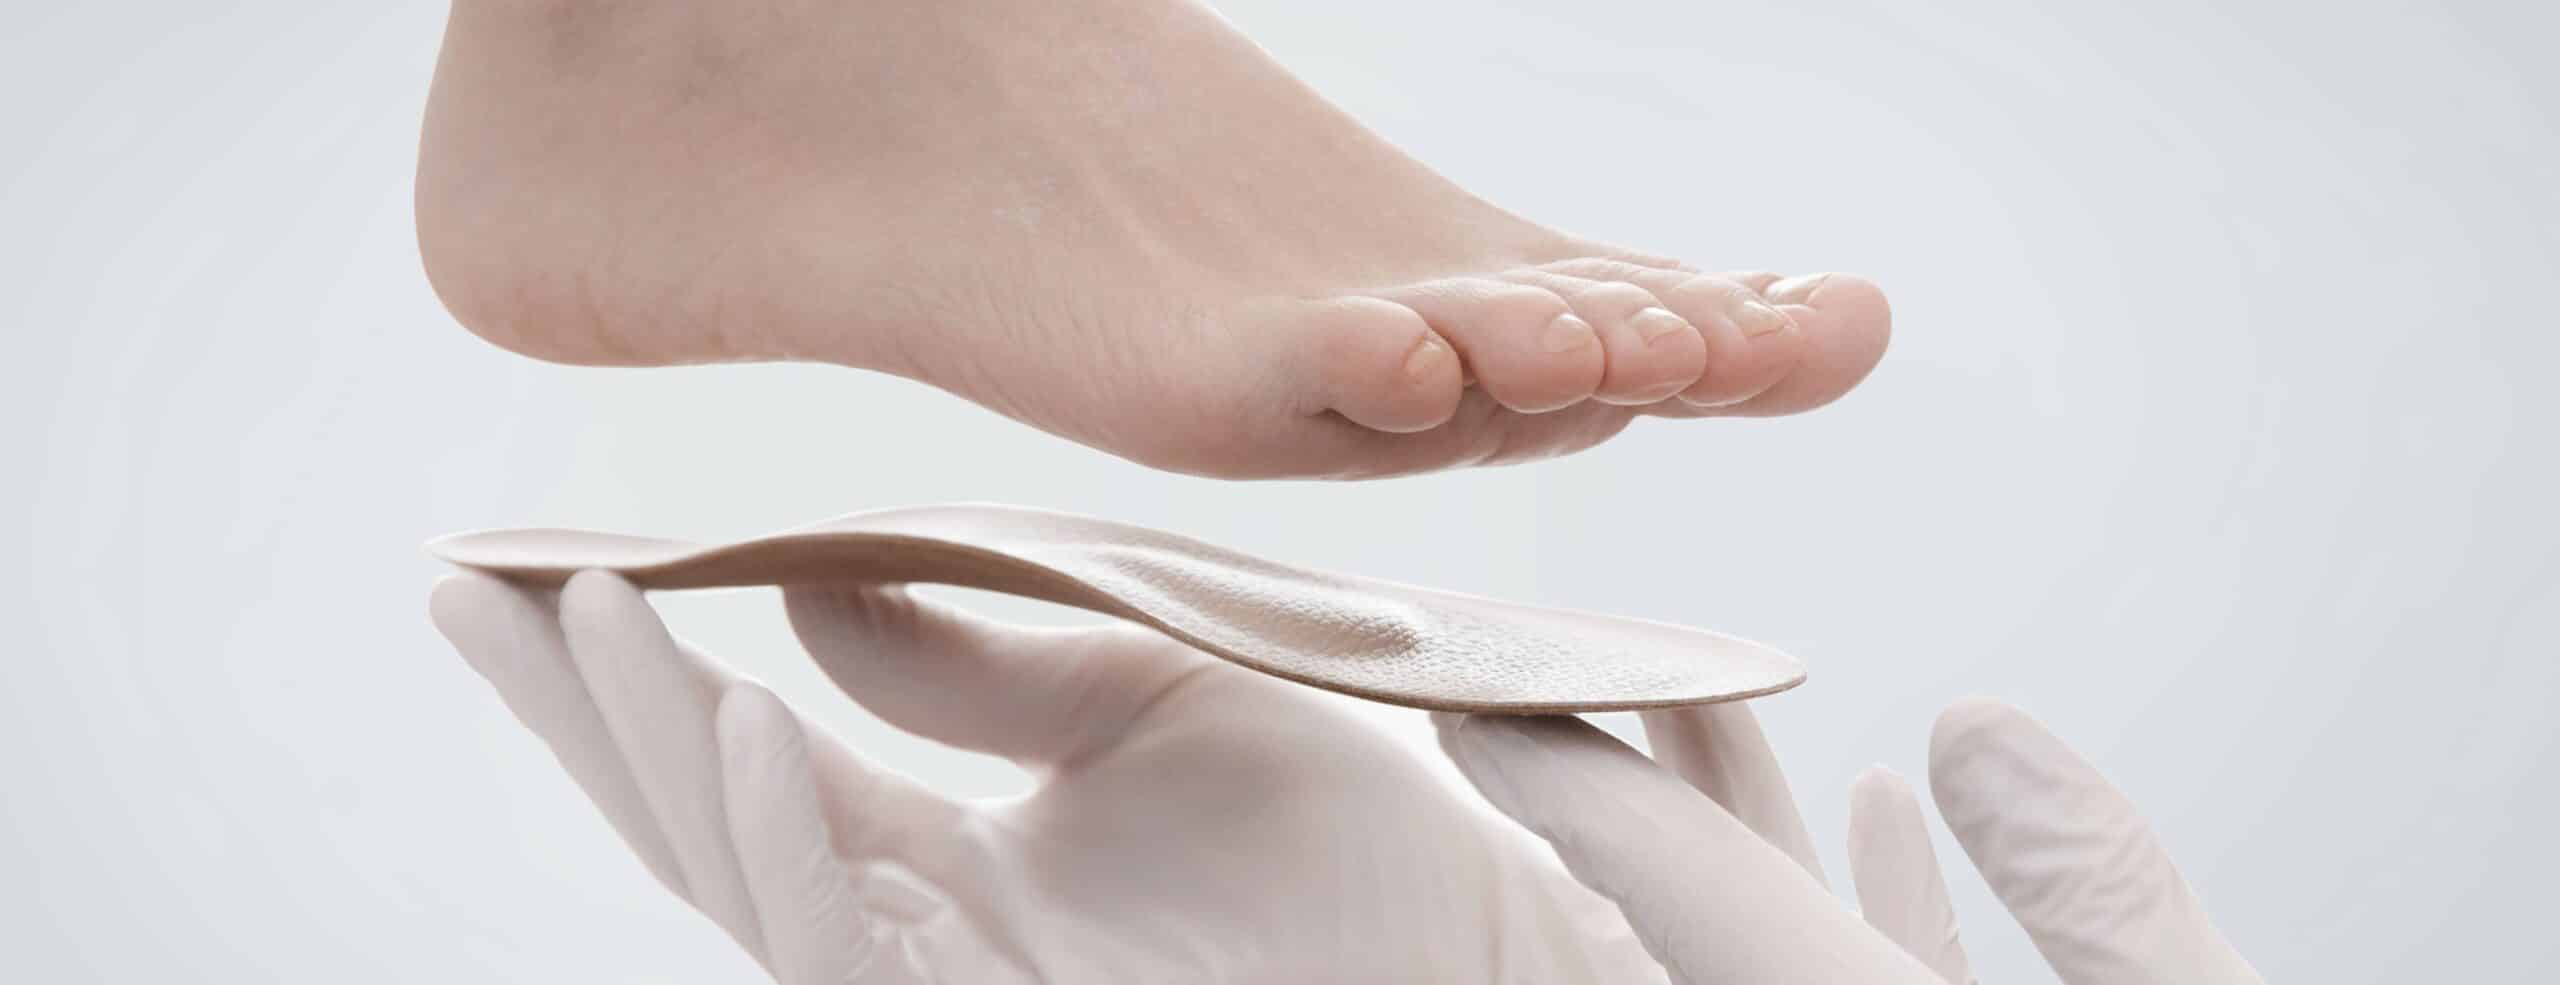 Quelles sont les conséquences de pieds plats ?|Dr Polle | Normandie